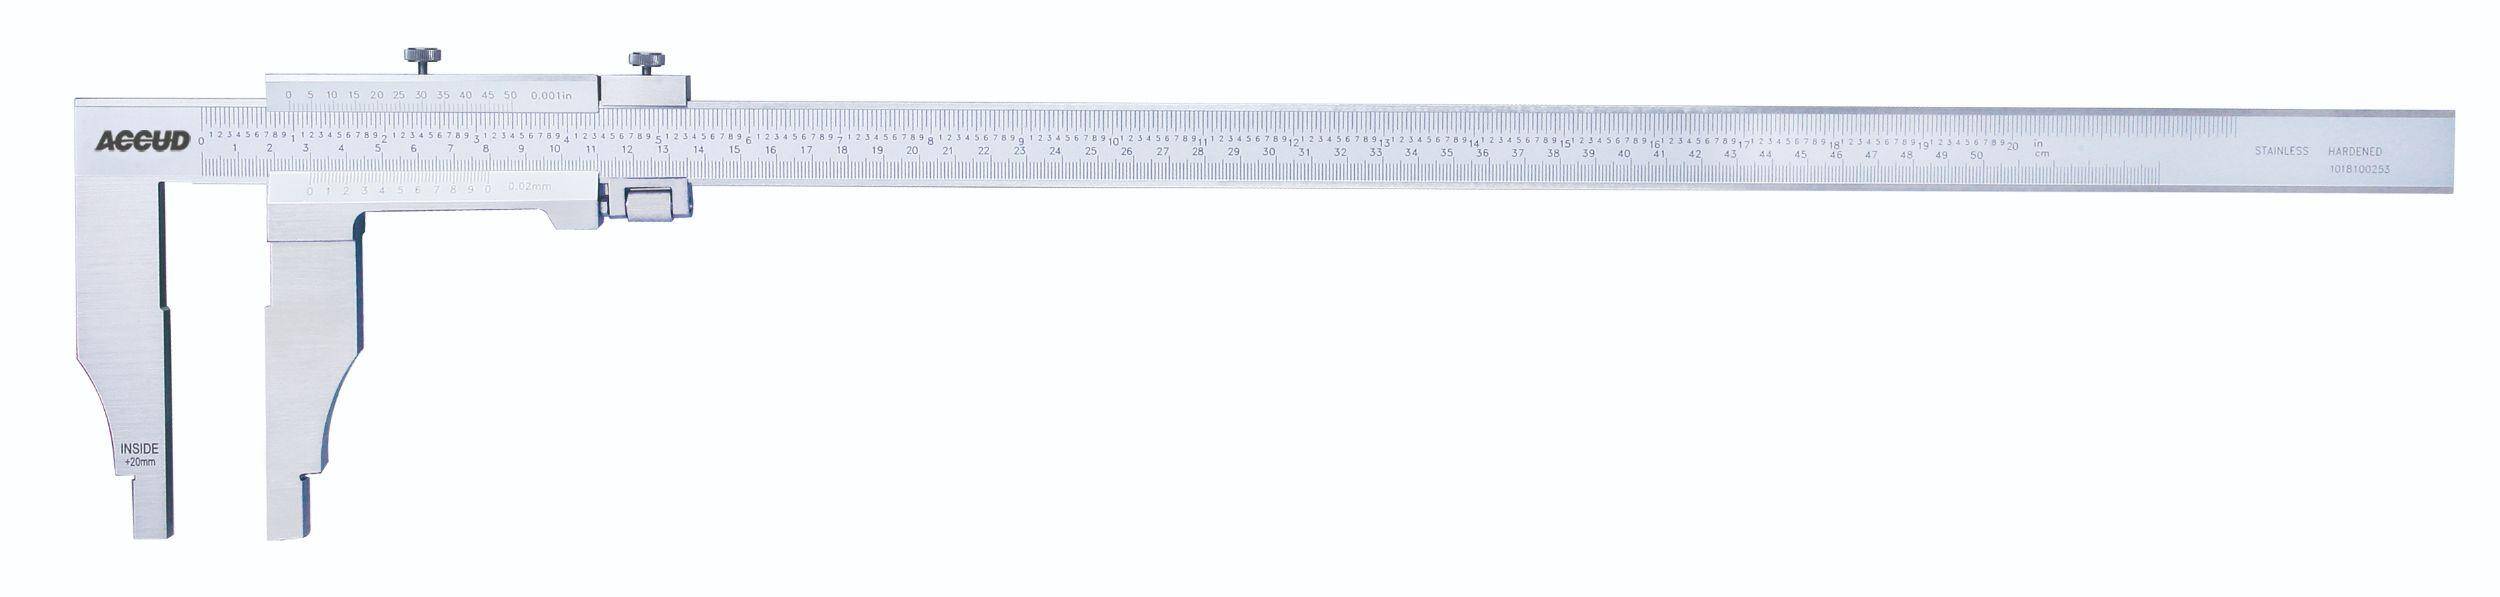 ACCUD suwmiarka analogowa 200/0.05 mm jednostronna długość szczęk 100 mm 128-008-51